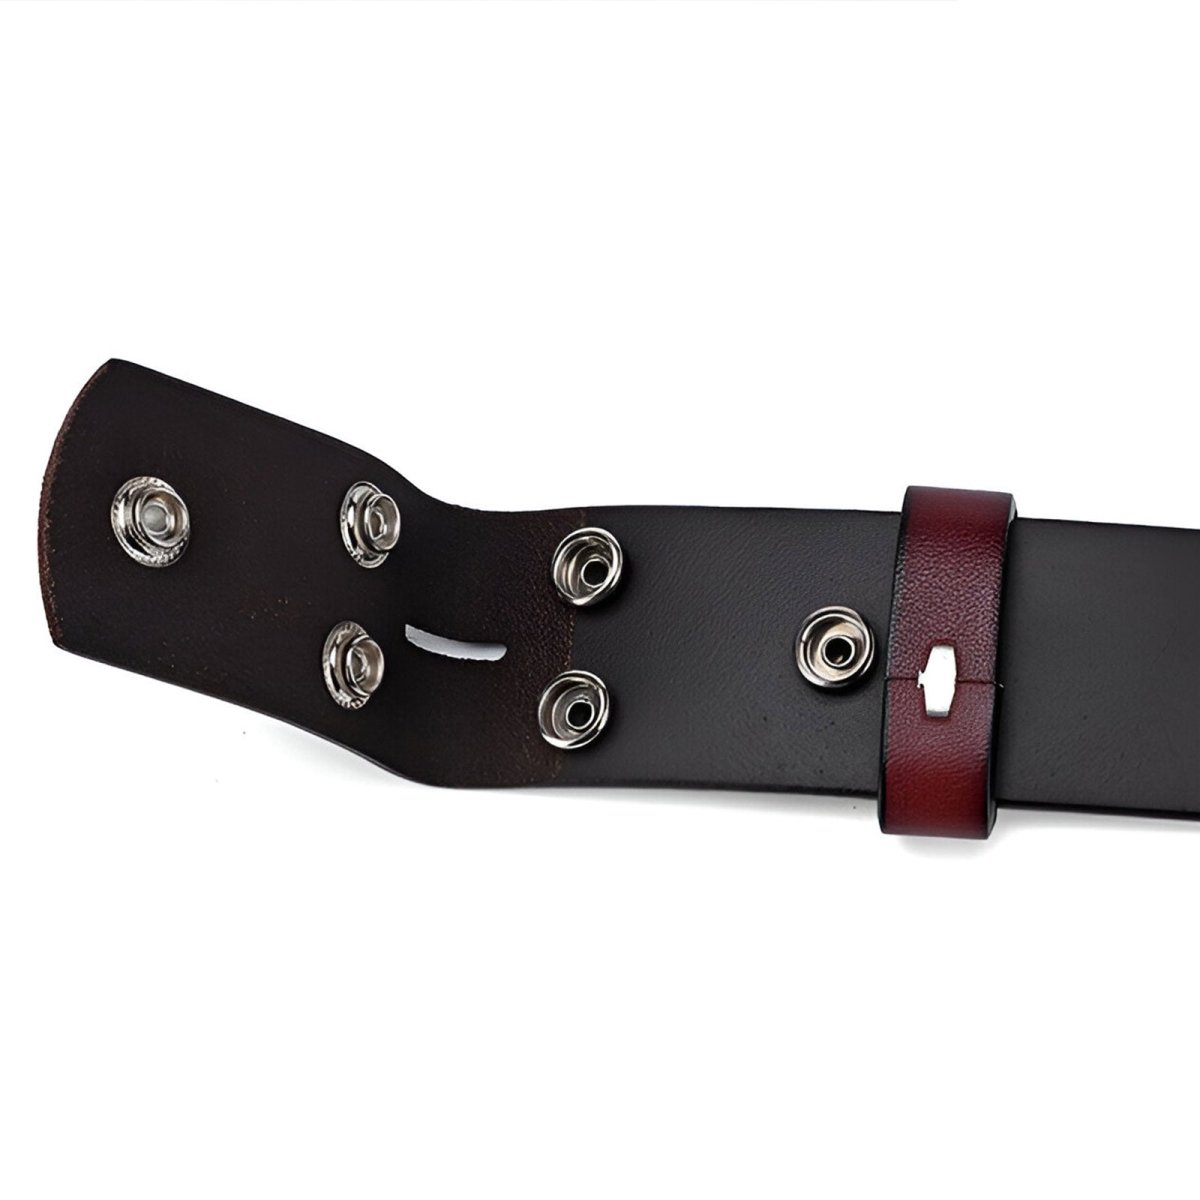 Lanière de ceinture 3.8 cm, en cuir uni, fixation par boutons pression, pour boucles interchangeables, modèle Clifford - La Boutique de la Ceinture